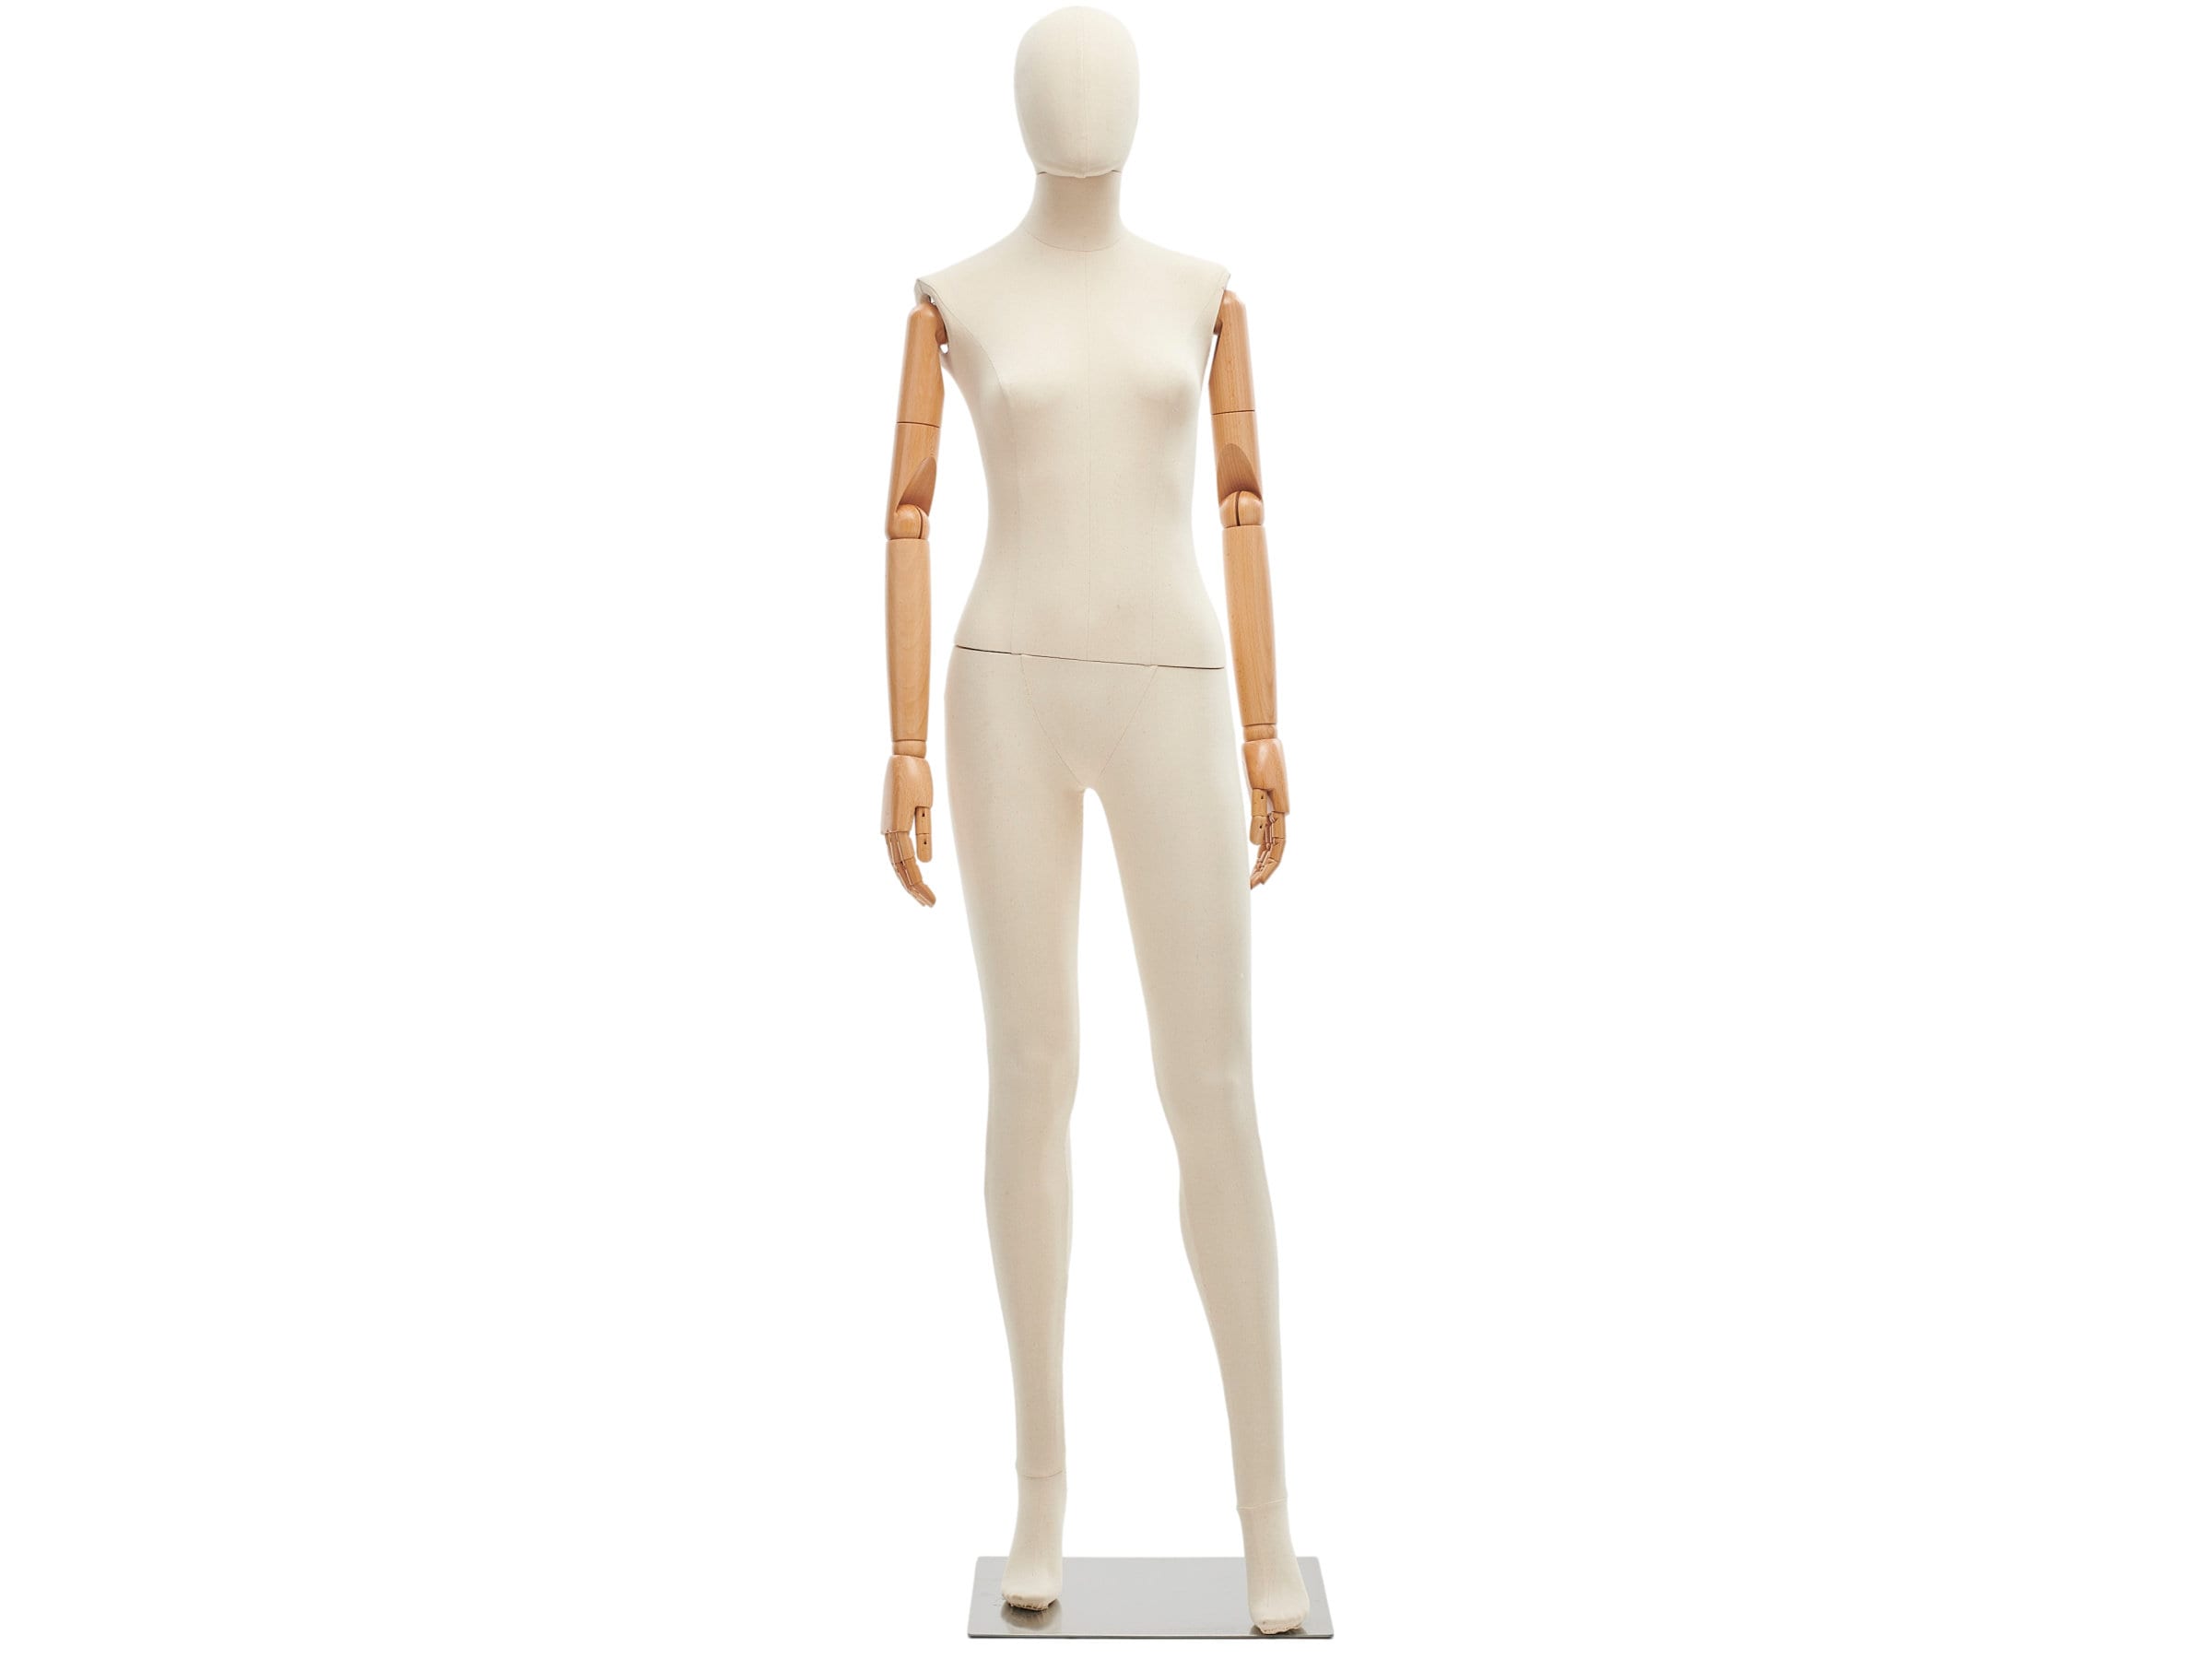 Ladies Mannequin - Bust Linen size S - 36